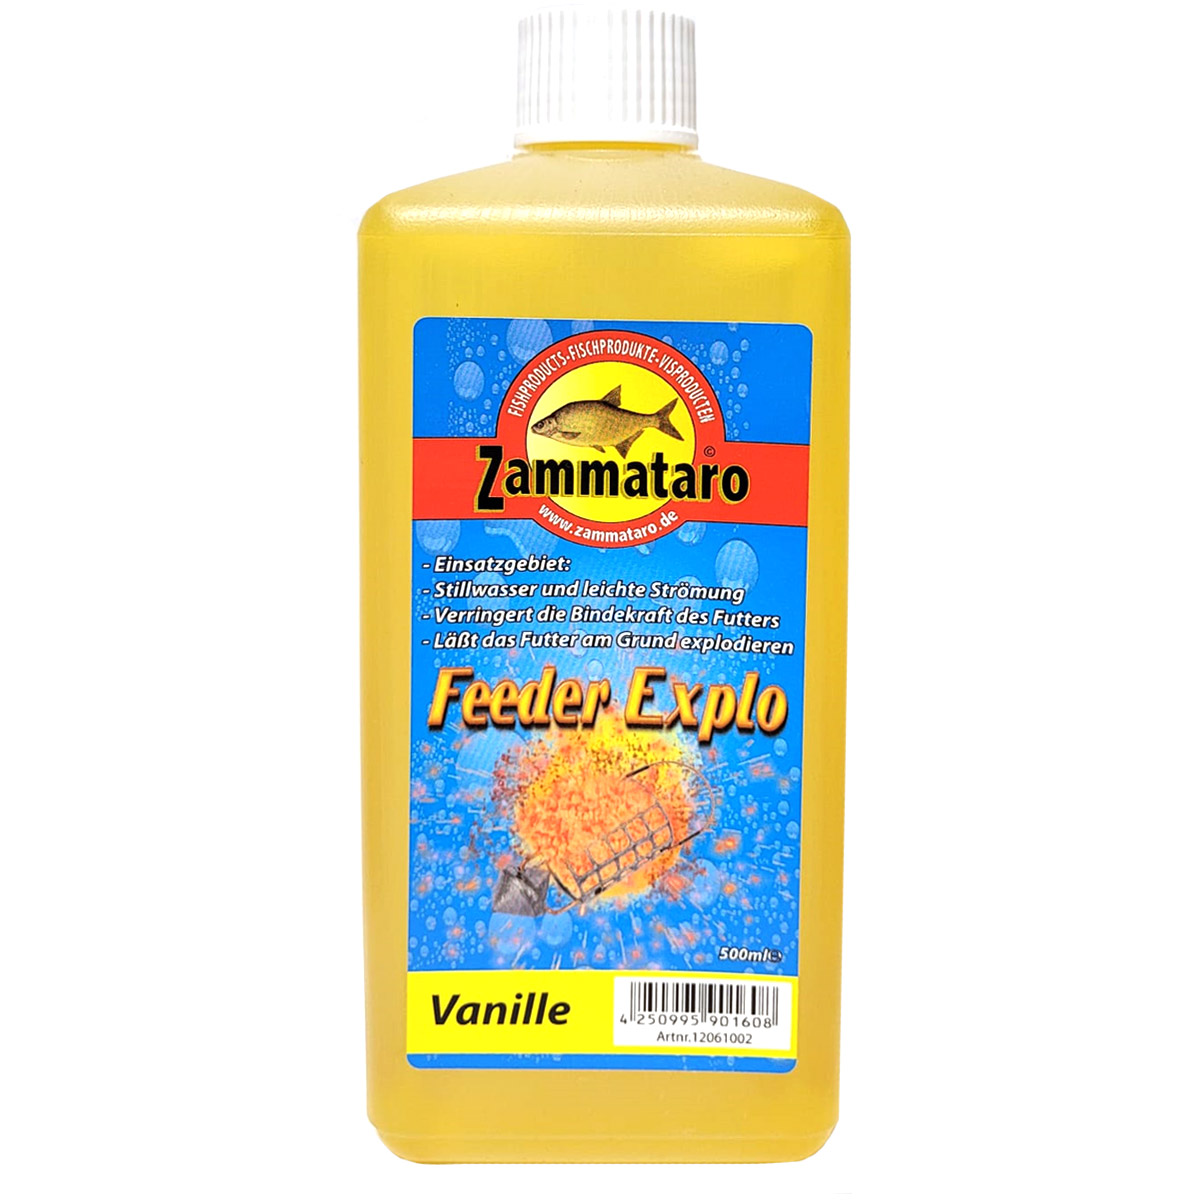 Zammataro Feeder Explo Vanille 500ml 